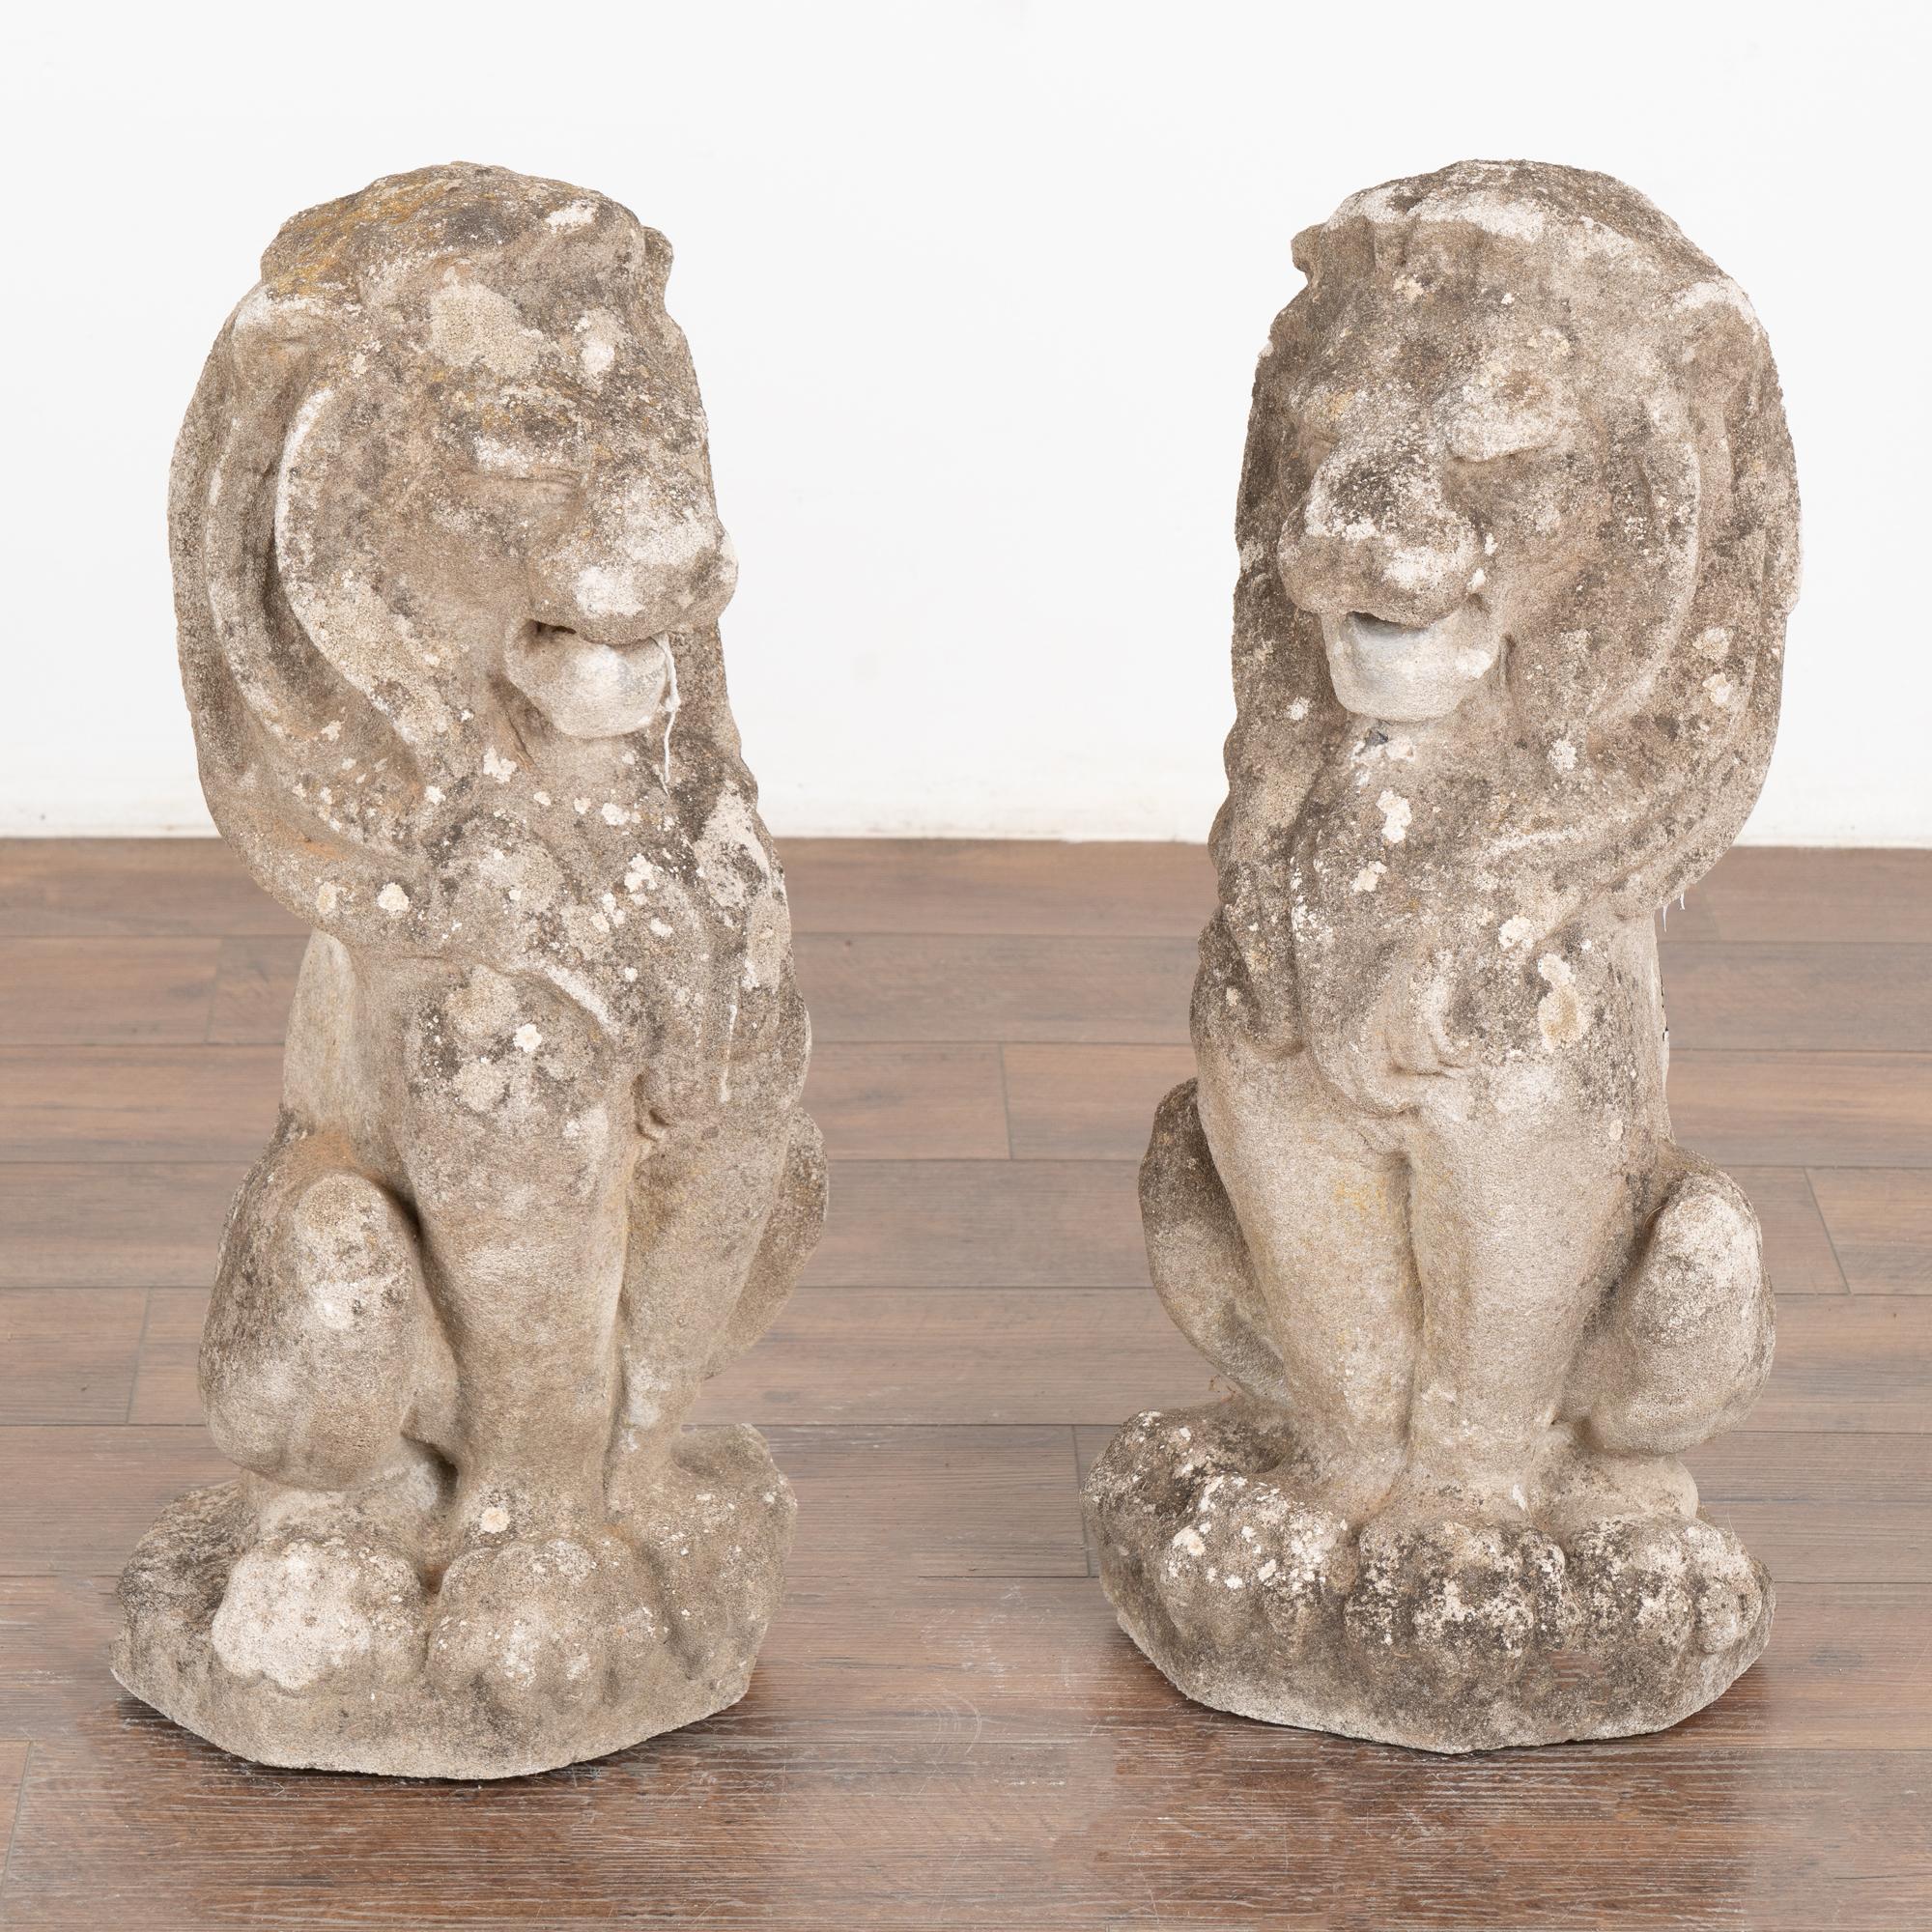 Paire de statues de lion françaises du début du 20e siècle, sculptées dans la pierre calcaire. Les lions mâles à la belle crinière sont en position assise.
La patine vieillie, y compris la dégradation de la finition, l'usure, les vieilles taches de